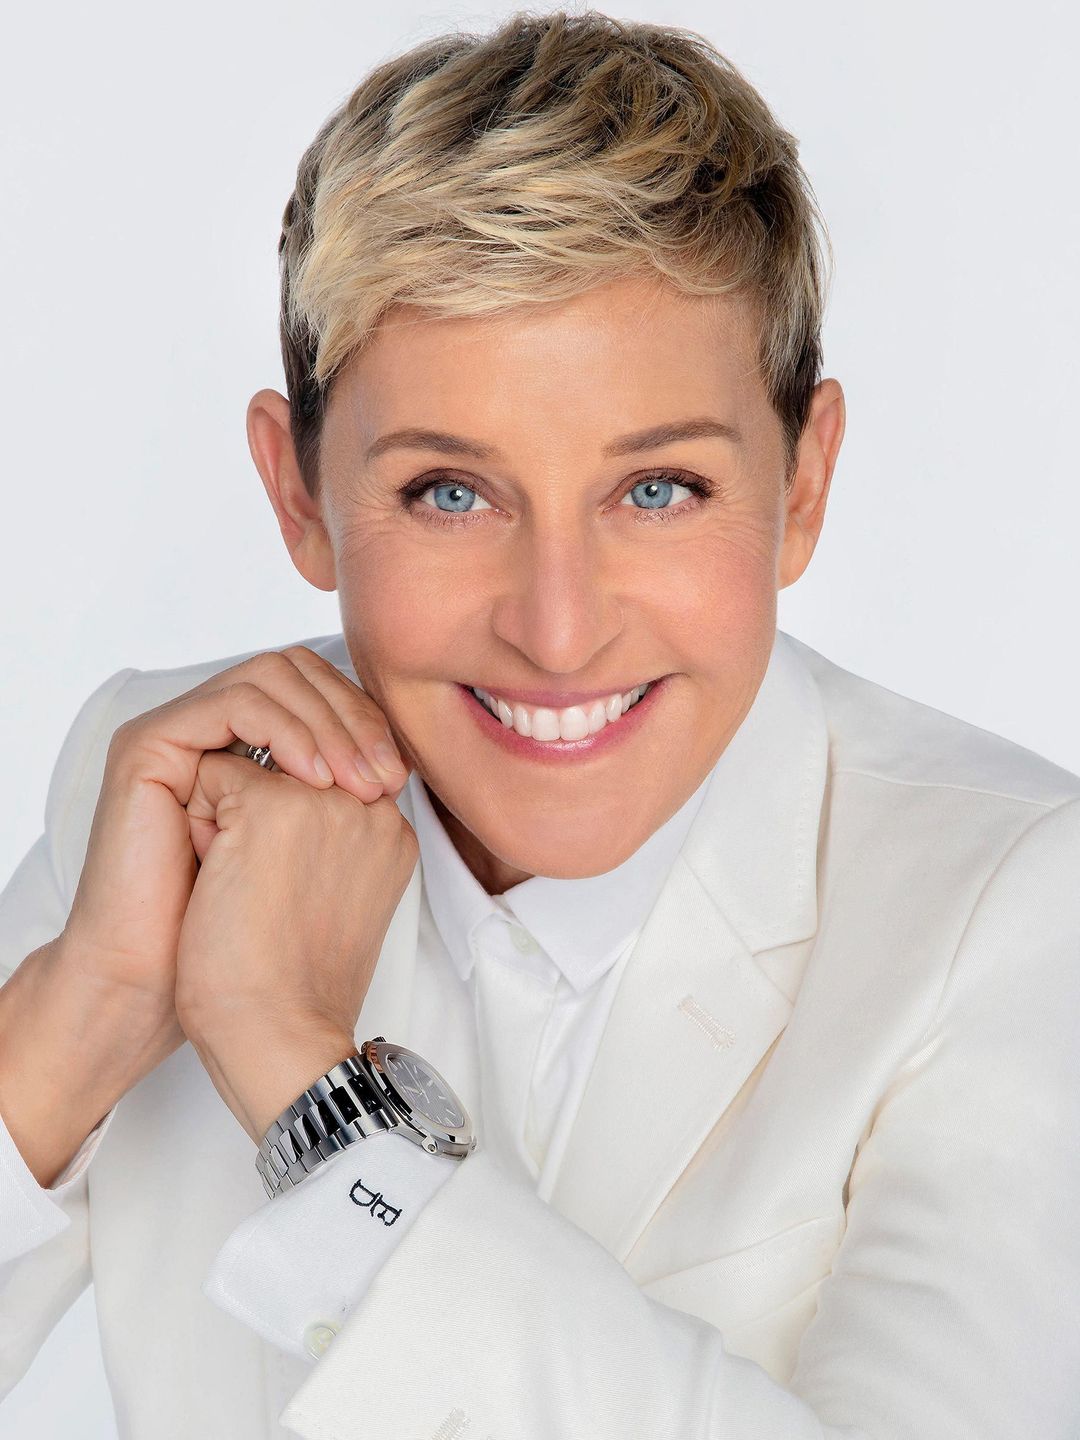 Ellen DeGeneres who is her mother